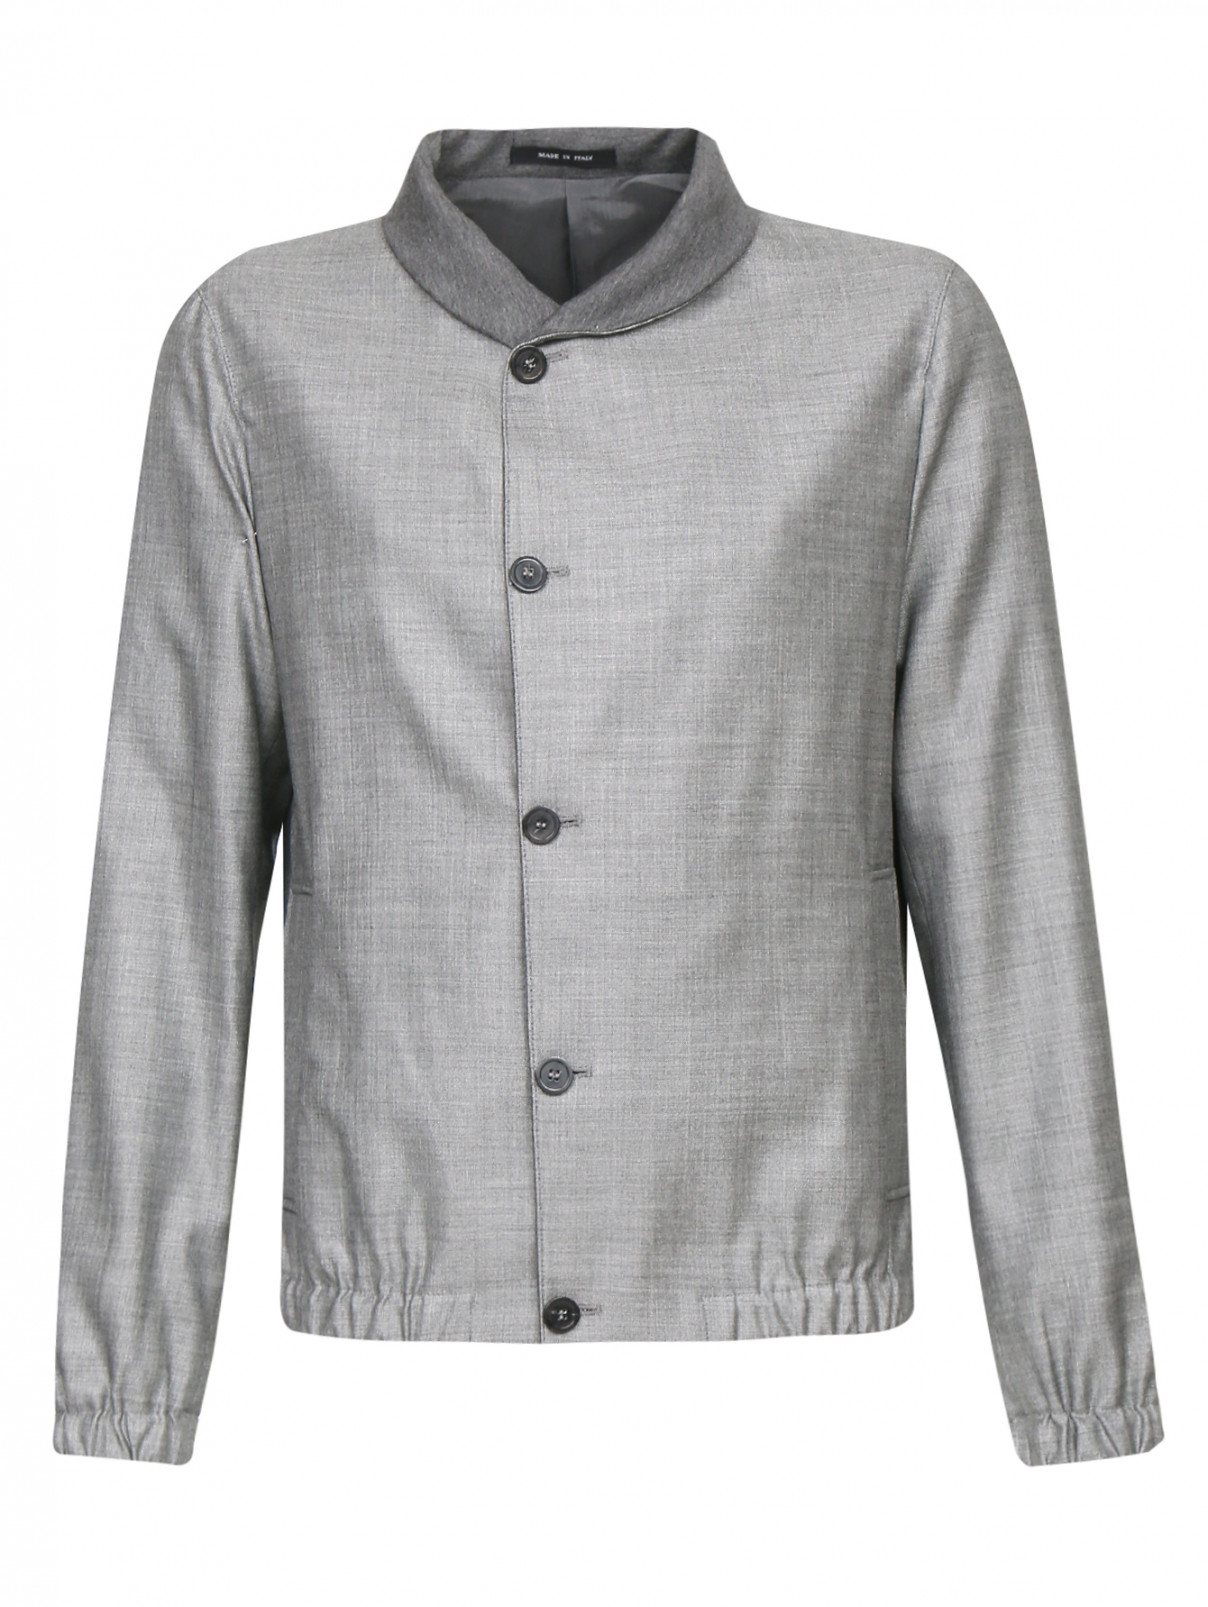 Куртка из шерсти и шелка Emporio Armani  –  Общий вид  – Цвет:  Серый